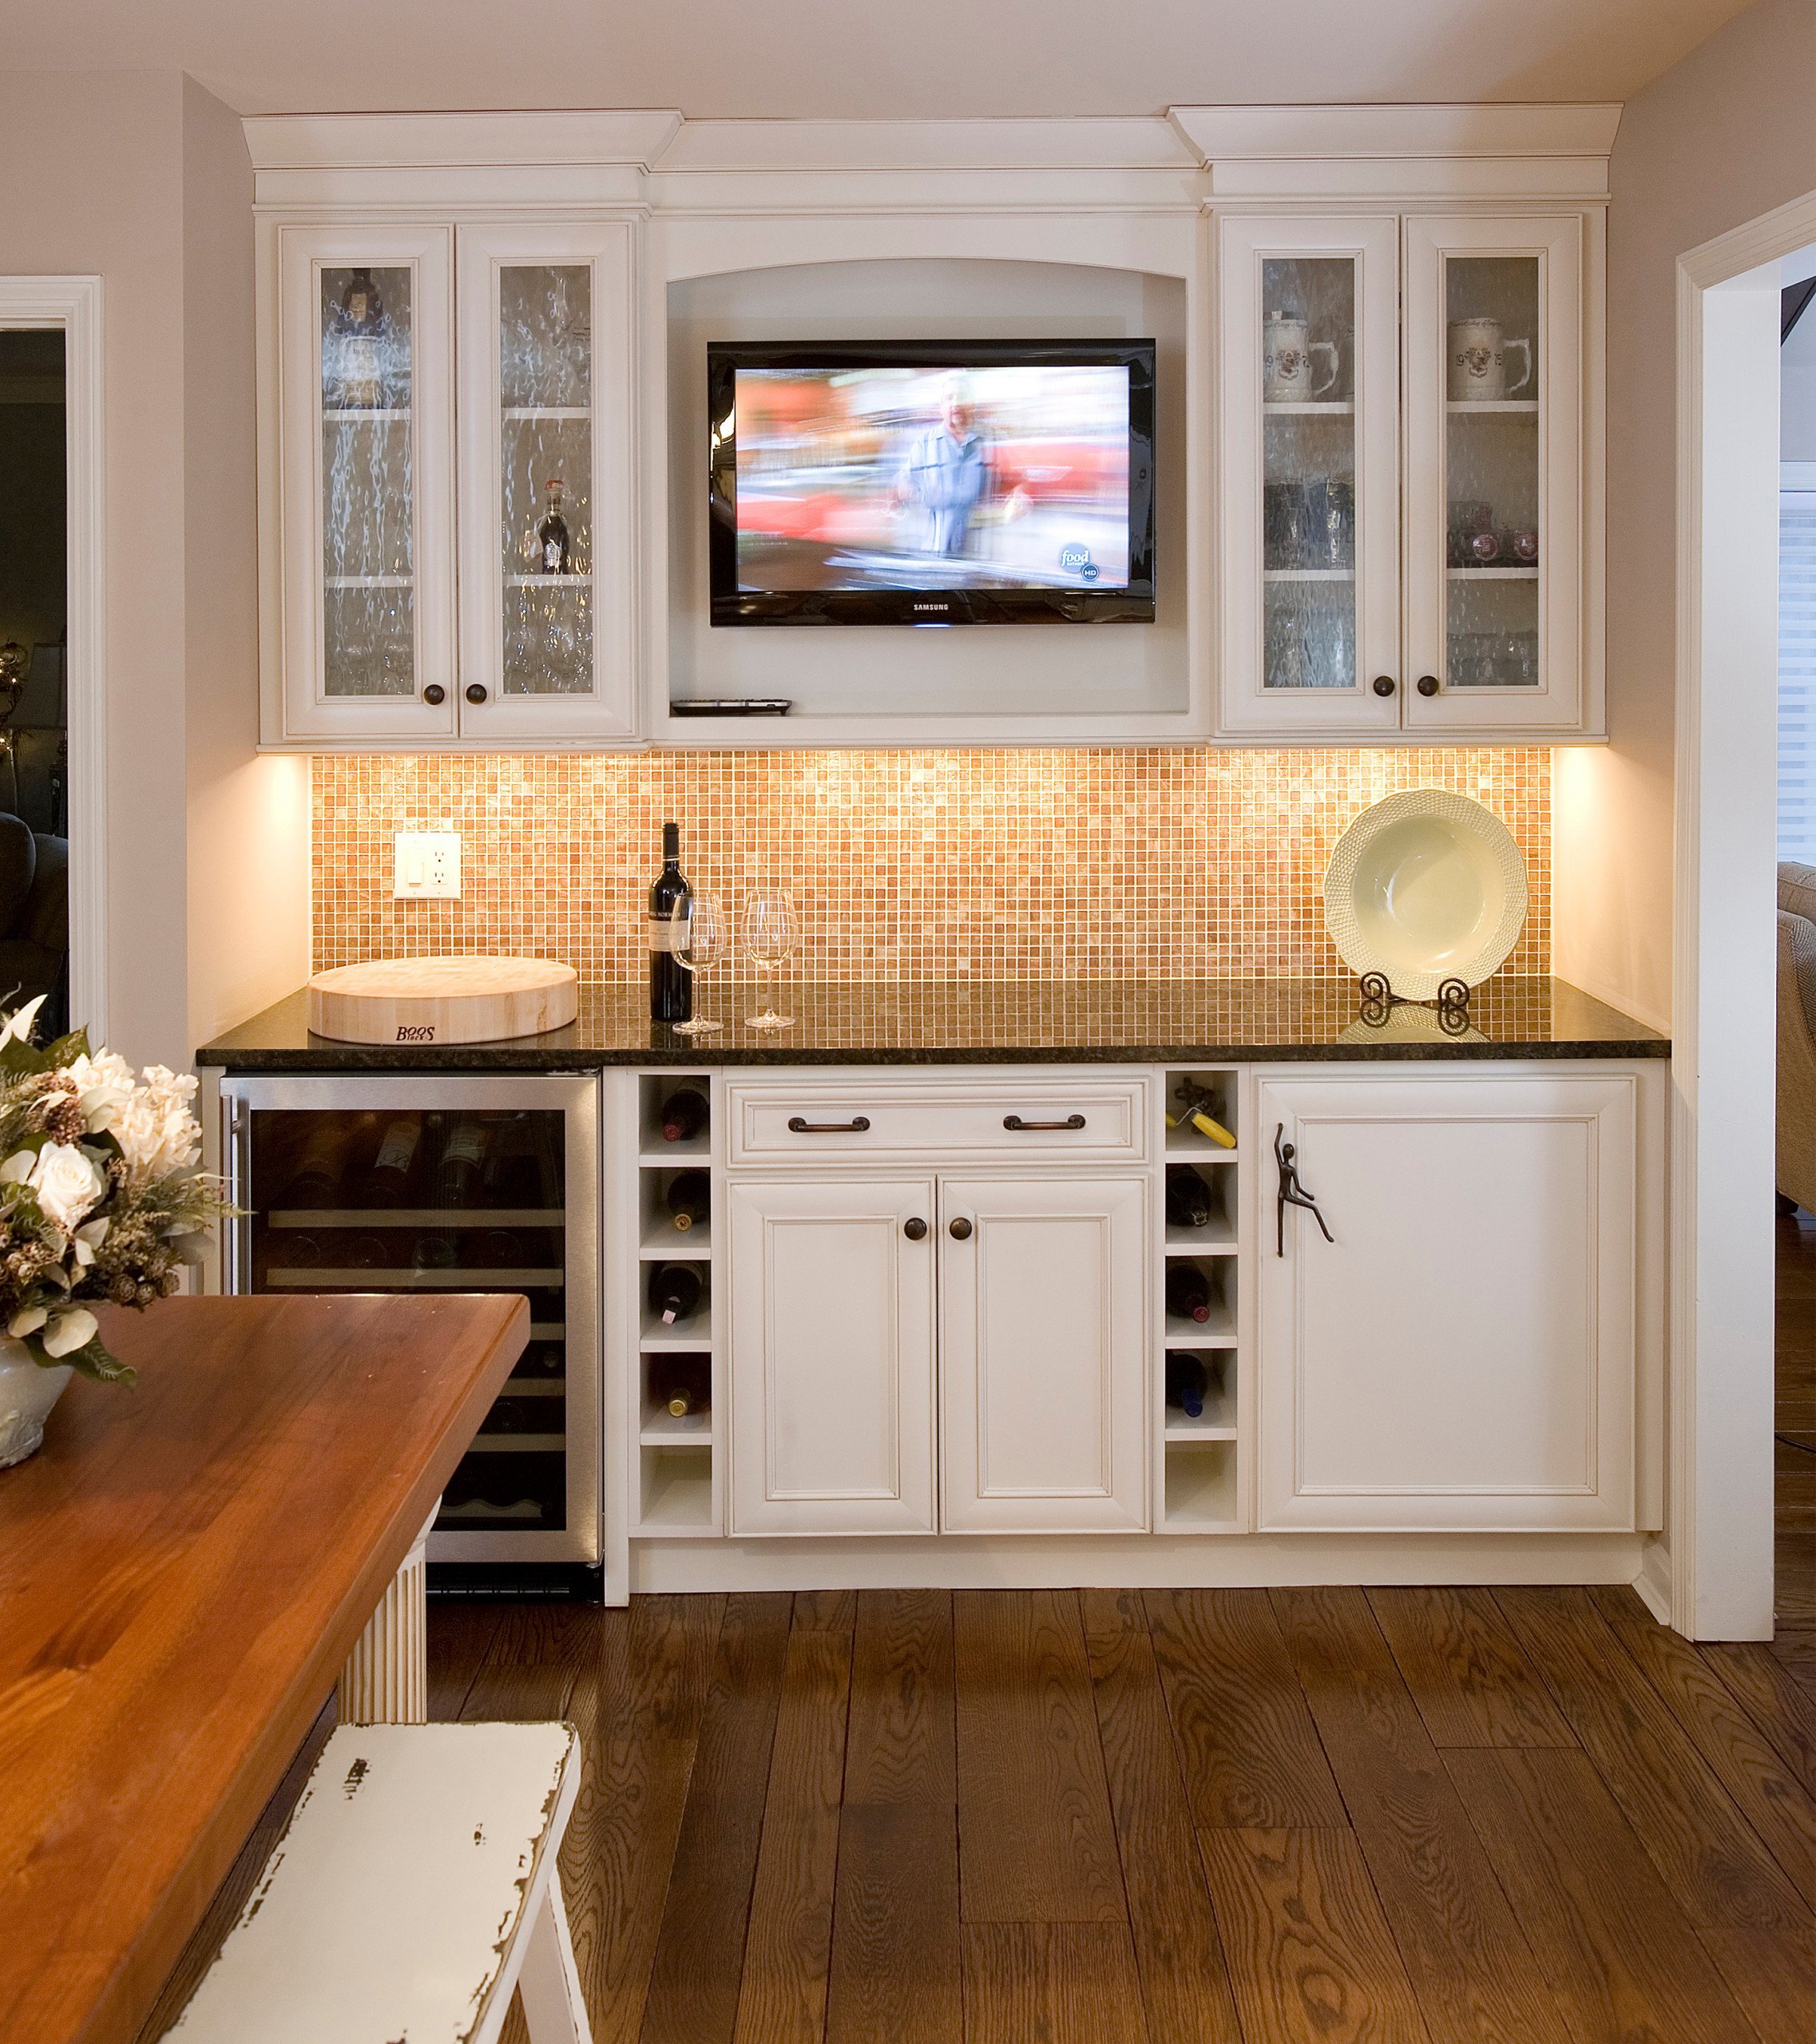 Встроенные телевизоры для кухни. Встраиваемый телевизор для кухни. Телевизор в кухонной мебели. Телевизор встроенный в кухню. Кухонный гарнитур с телевизором.